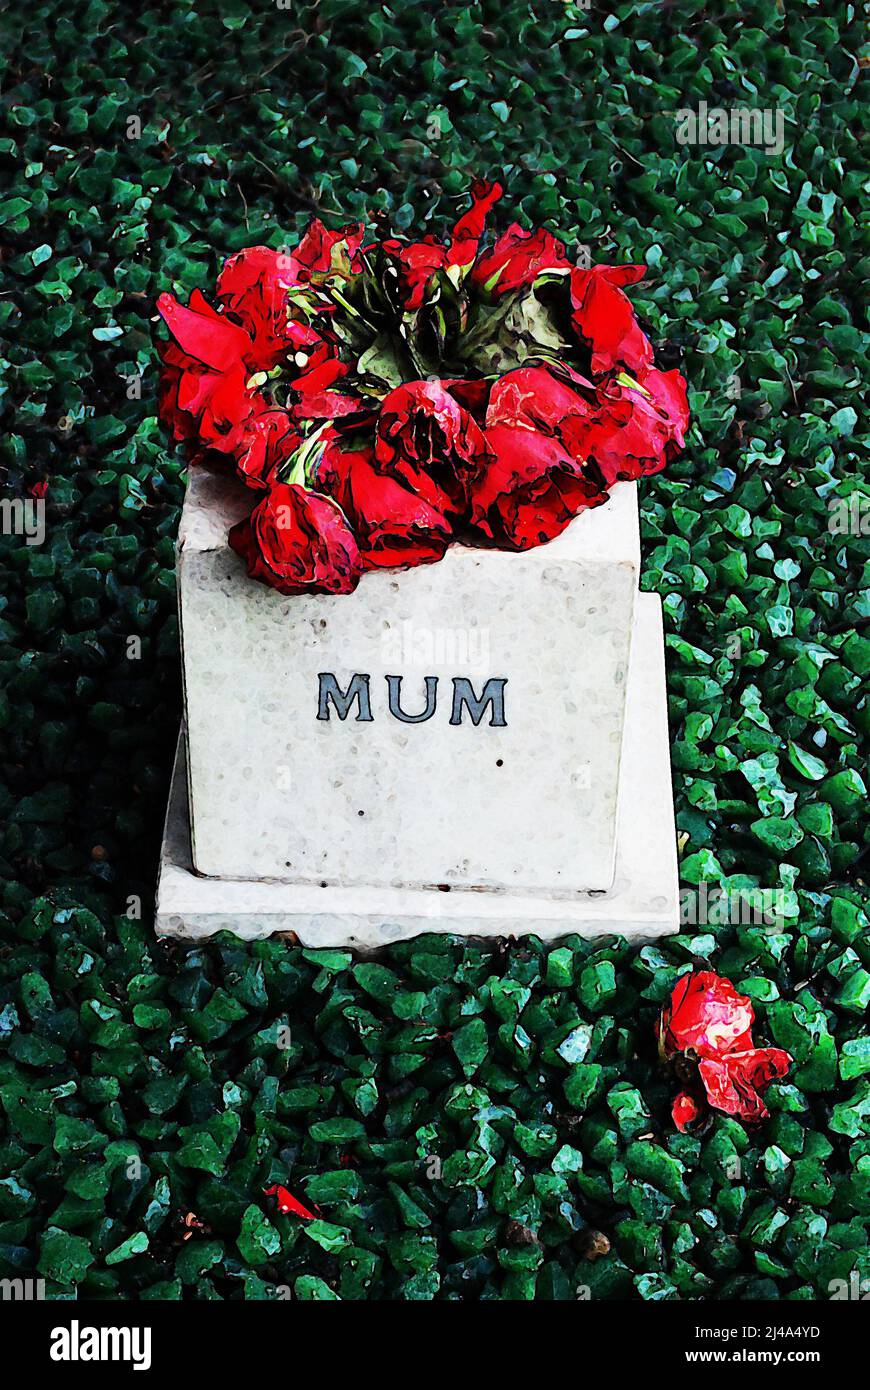 Arte digital de la tumba con las palabras Mamá y corona de flores moribundas, ilustrando la pérdida, el dolor, la muerte, Covid-19, perder a la familia, hacer frente a la pérdida y morir. Foto de stock